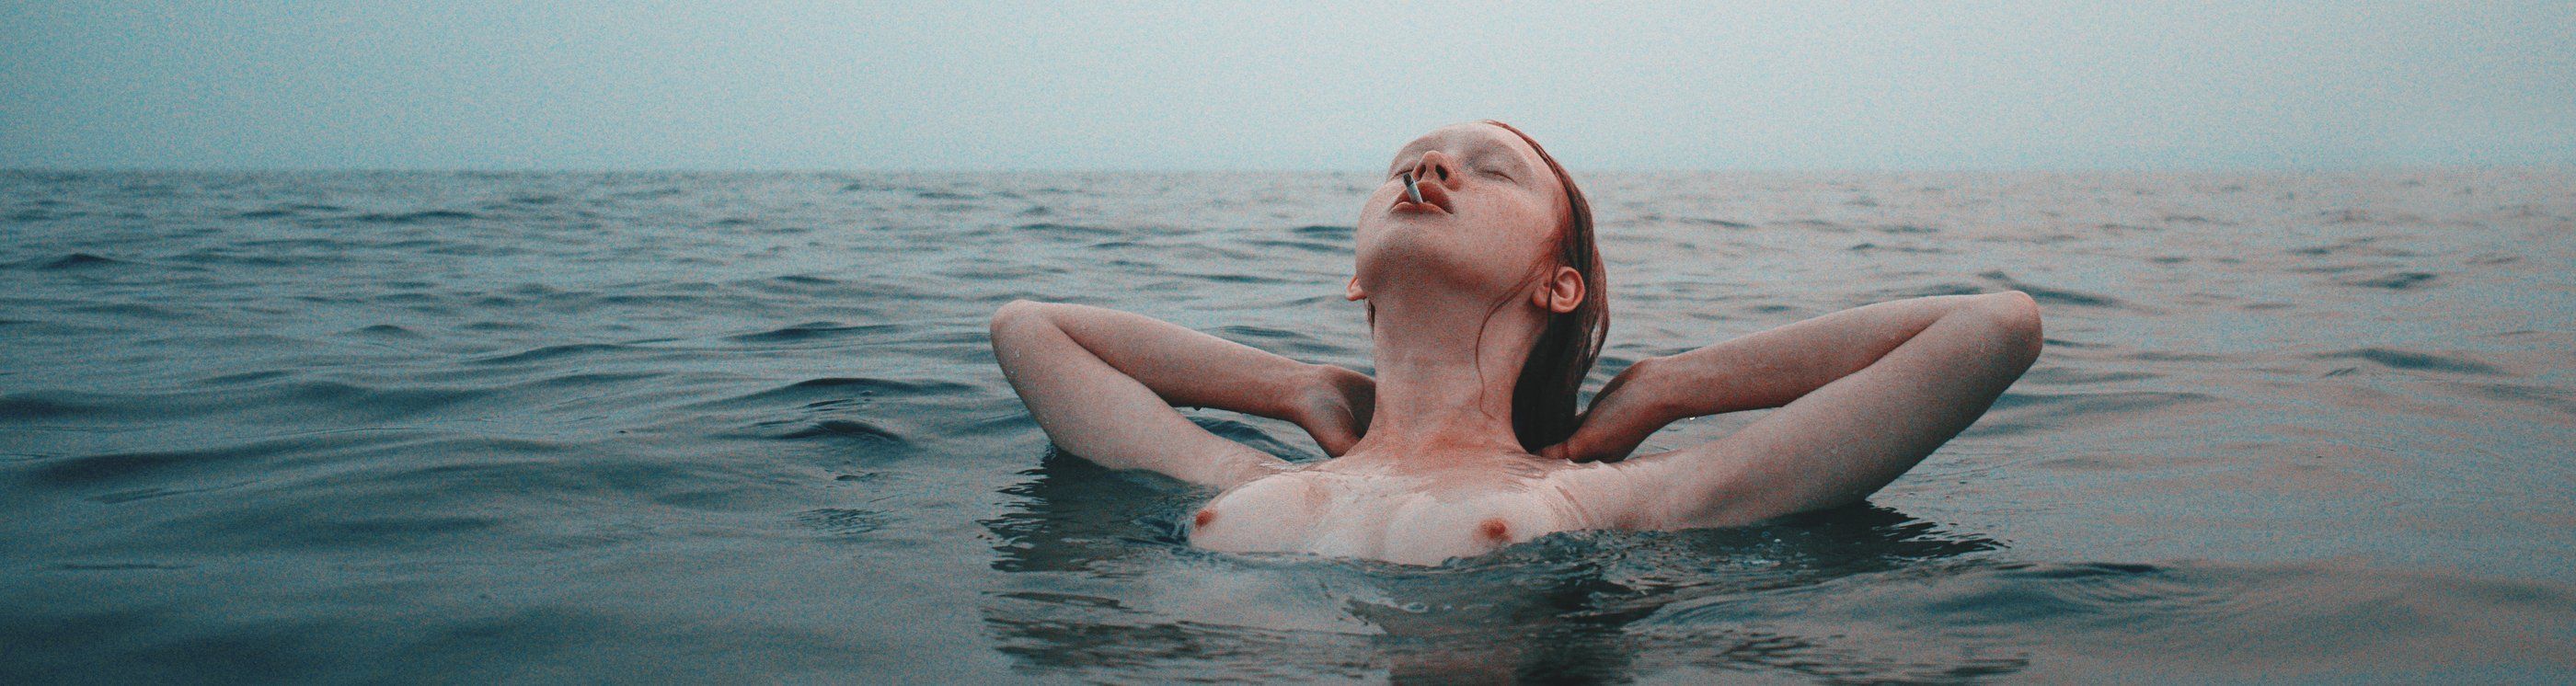 girl, nude, lake, water, smoking, morning, sunrise, dawn, Роман Филиппов